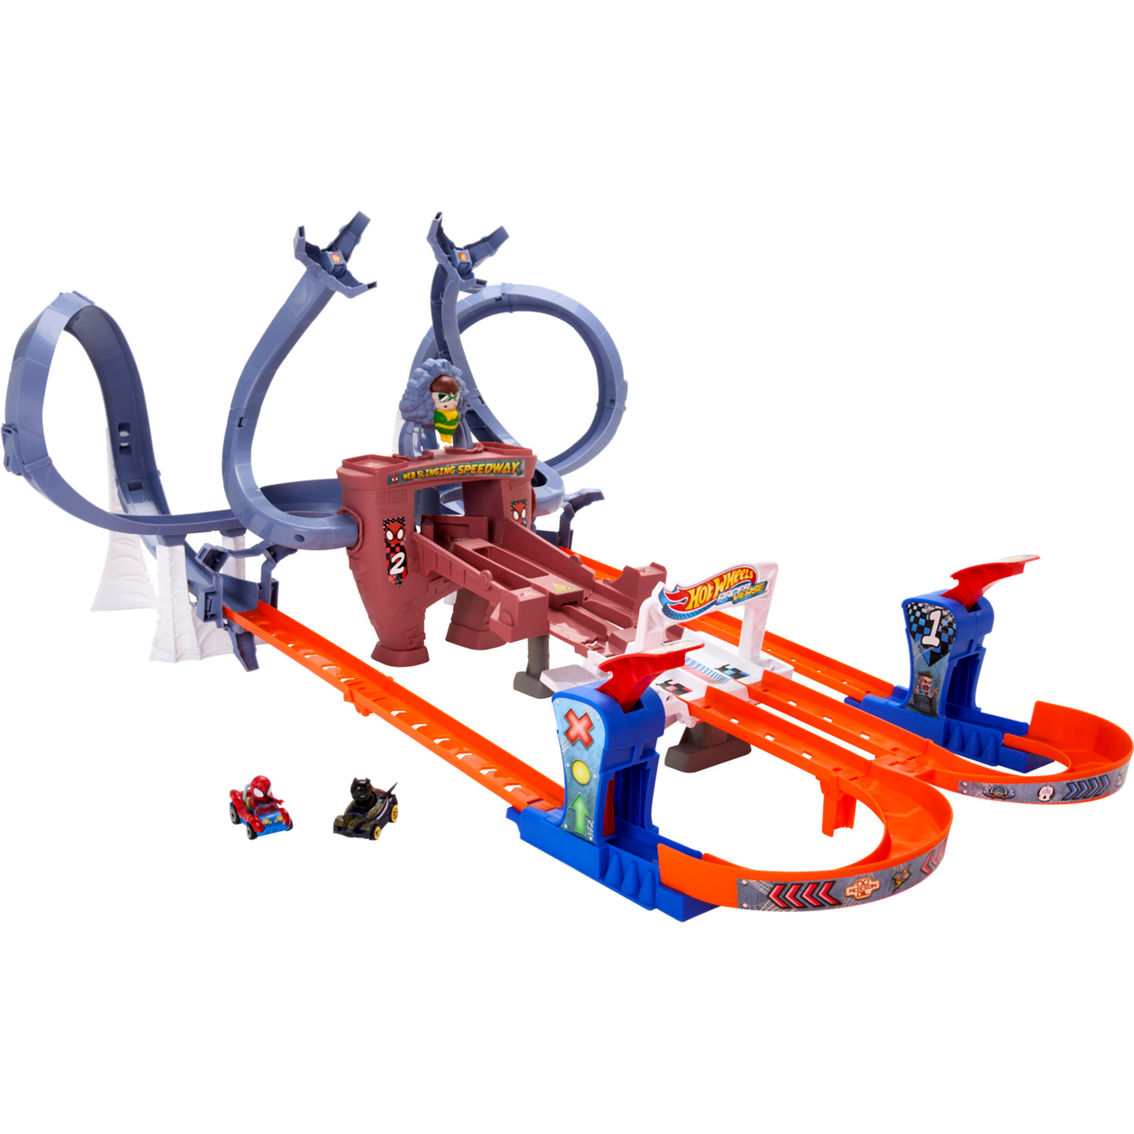 Hot Wheels Racerverse Spider-Man's Web Slinging Speedway Track Set - Image 3 of 9